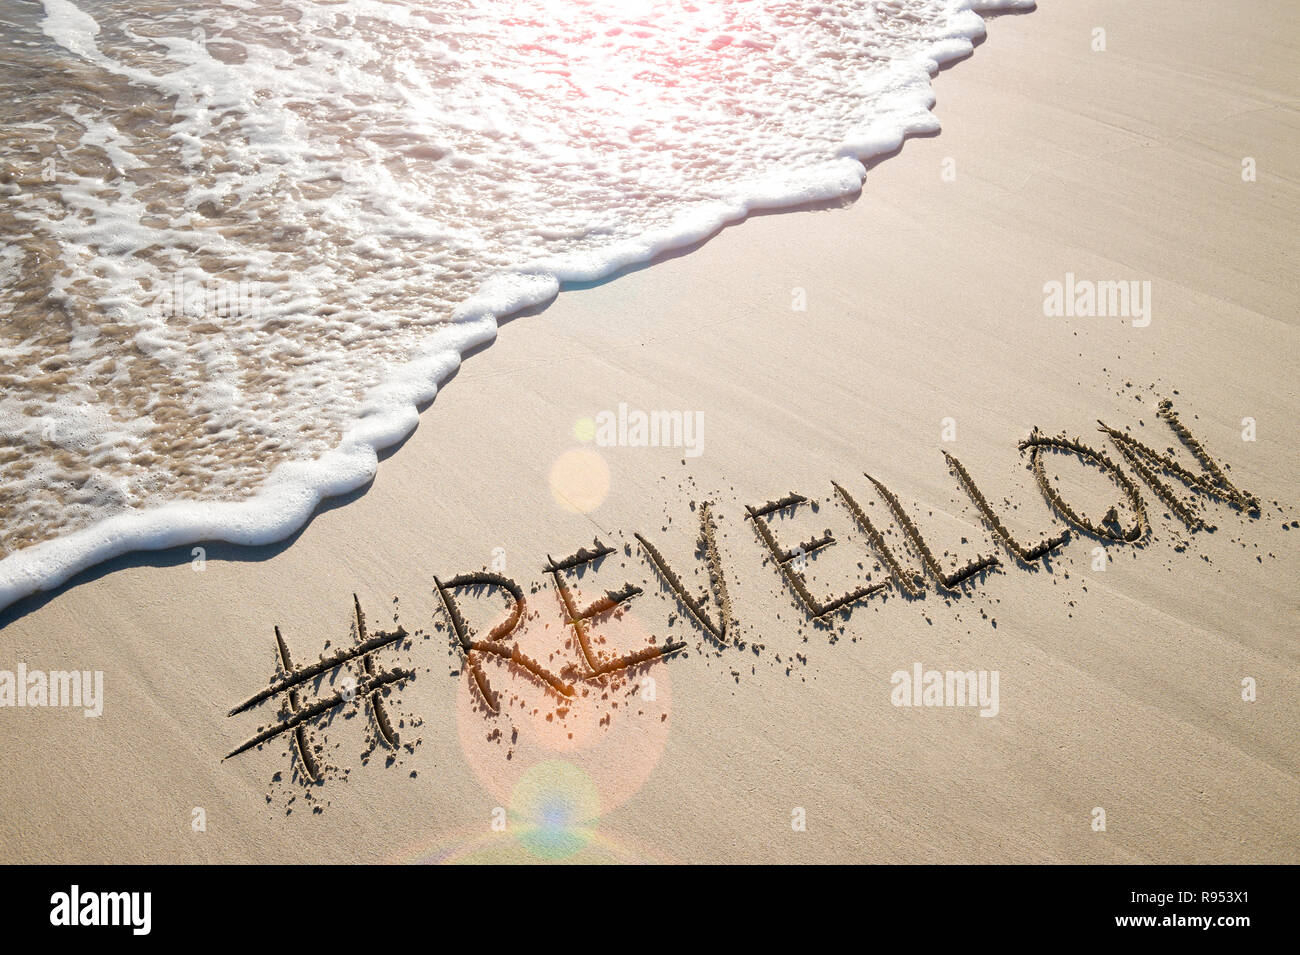 Nachricht für Neujahr (ein französisches Wort für das Erwachen, die Silvester in Brasilien) in Sand geschrieben mit einem social media Hashtag am Strand Stockfoto